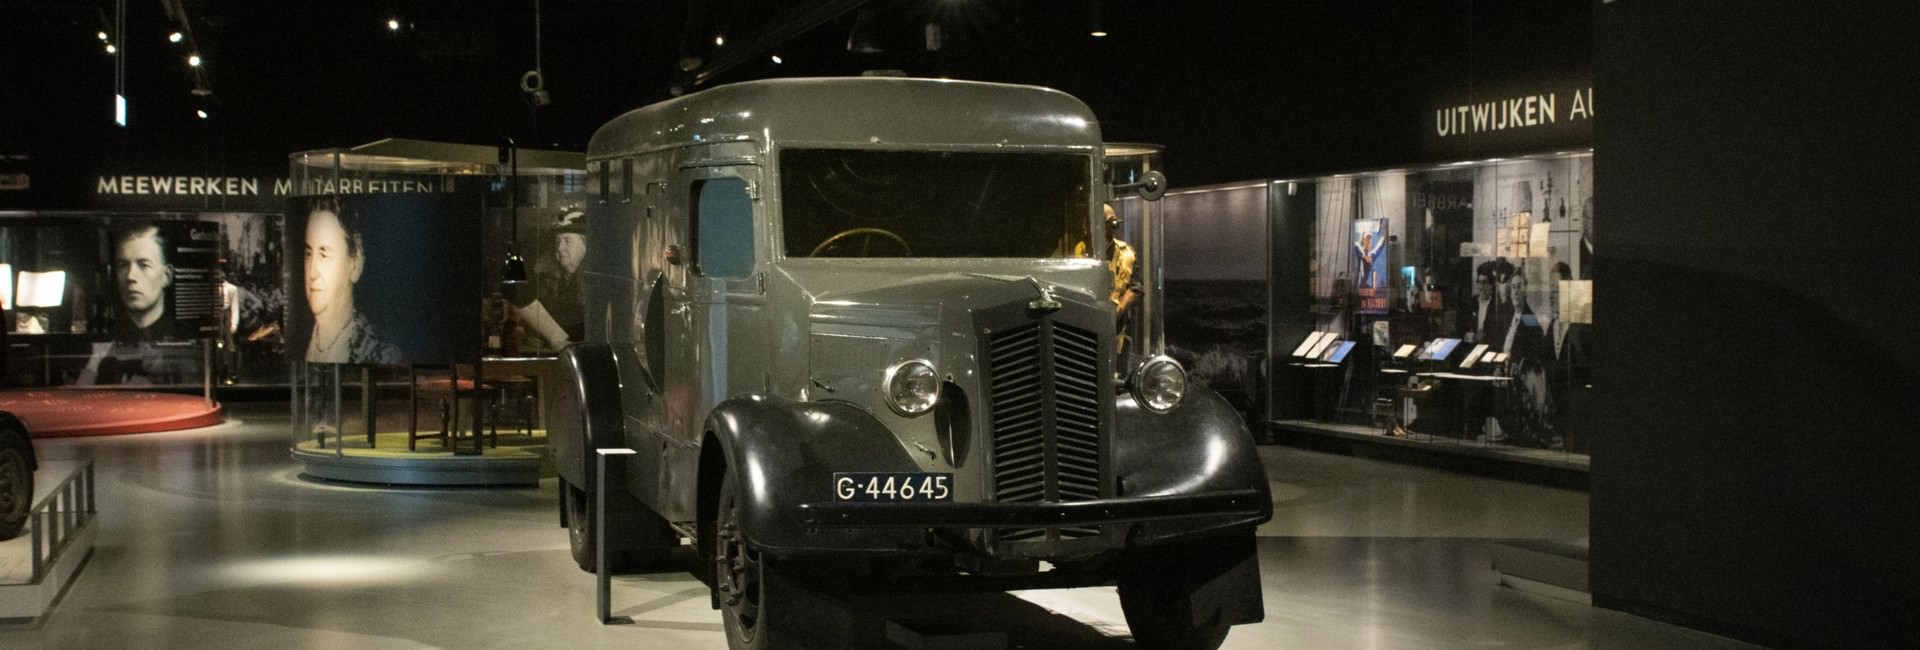 oorlogsmuseum - Nederland in de Tweede Wereldoorlog